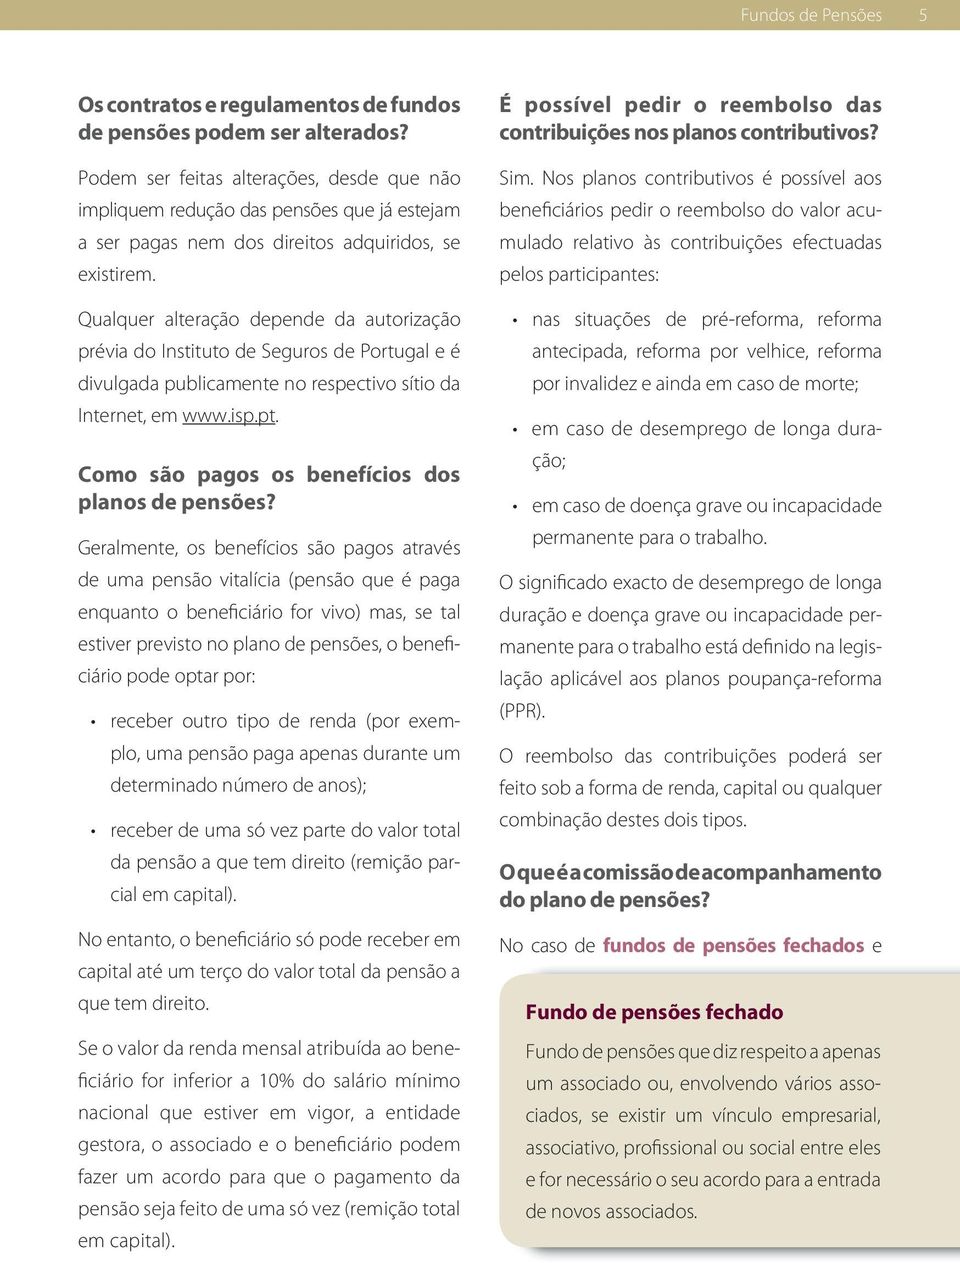 Qualquer alteração depende da autorização prévia do Instituto de Seguros de Portugal e é divulgada publicamente no respectivo sítio da Internet, em www.isp.pt.